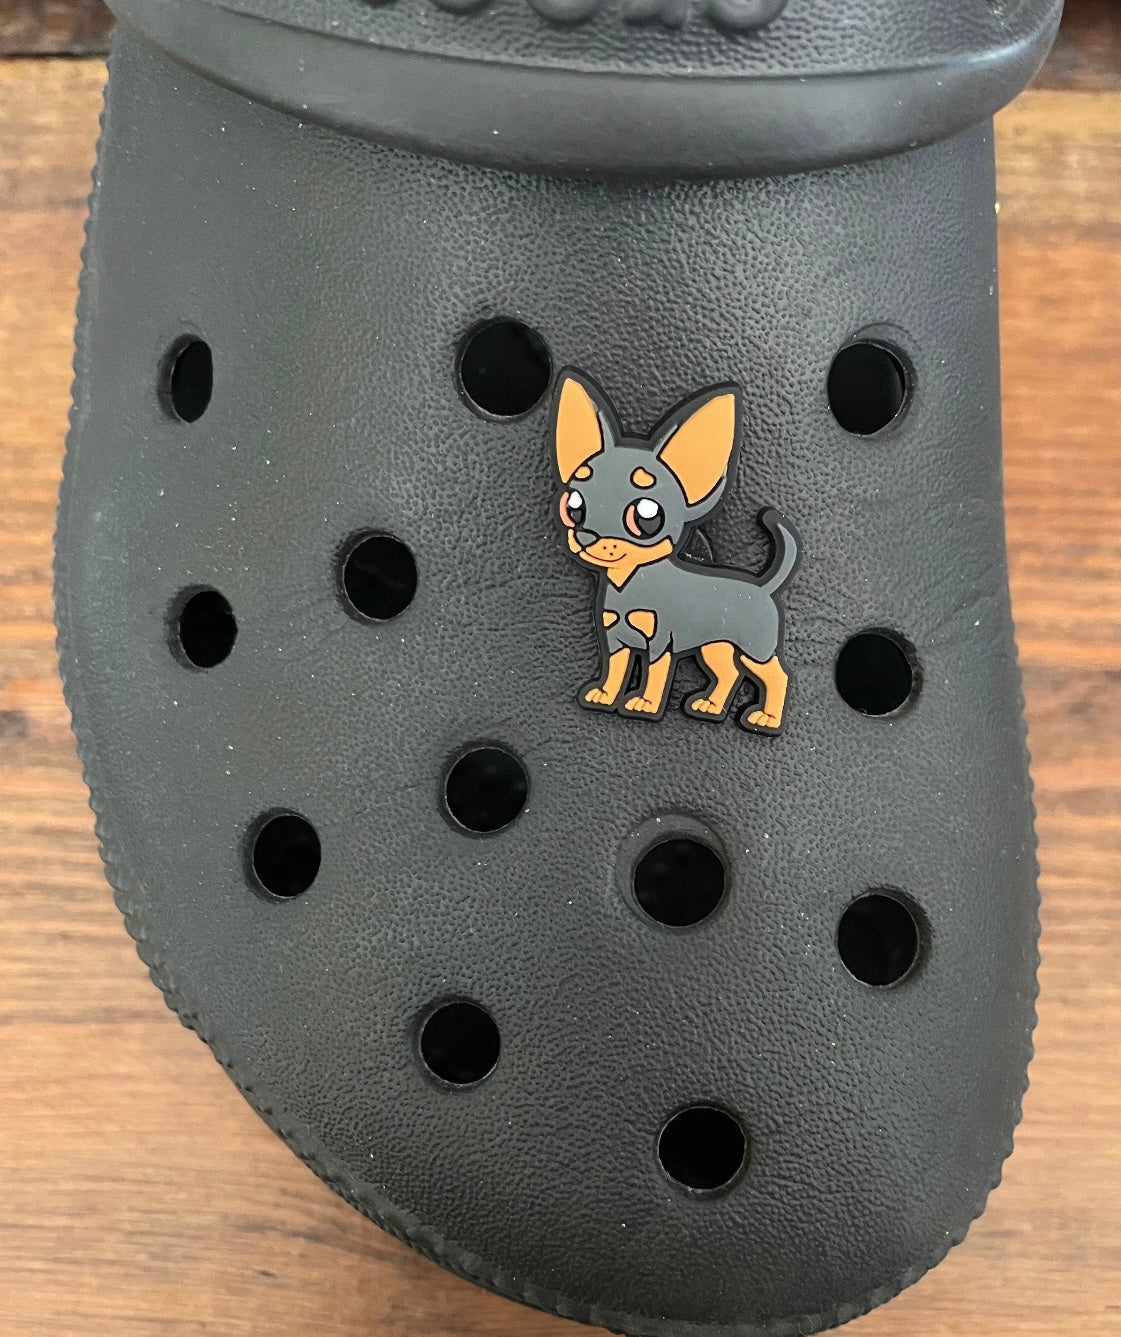 Black and tan chihuahua dog shoe charm on a croc shoe.